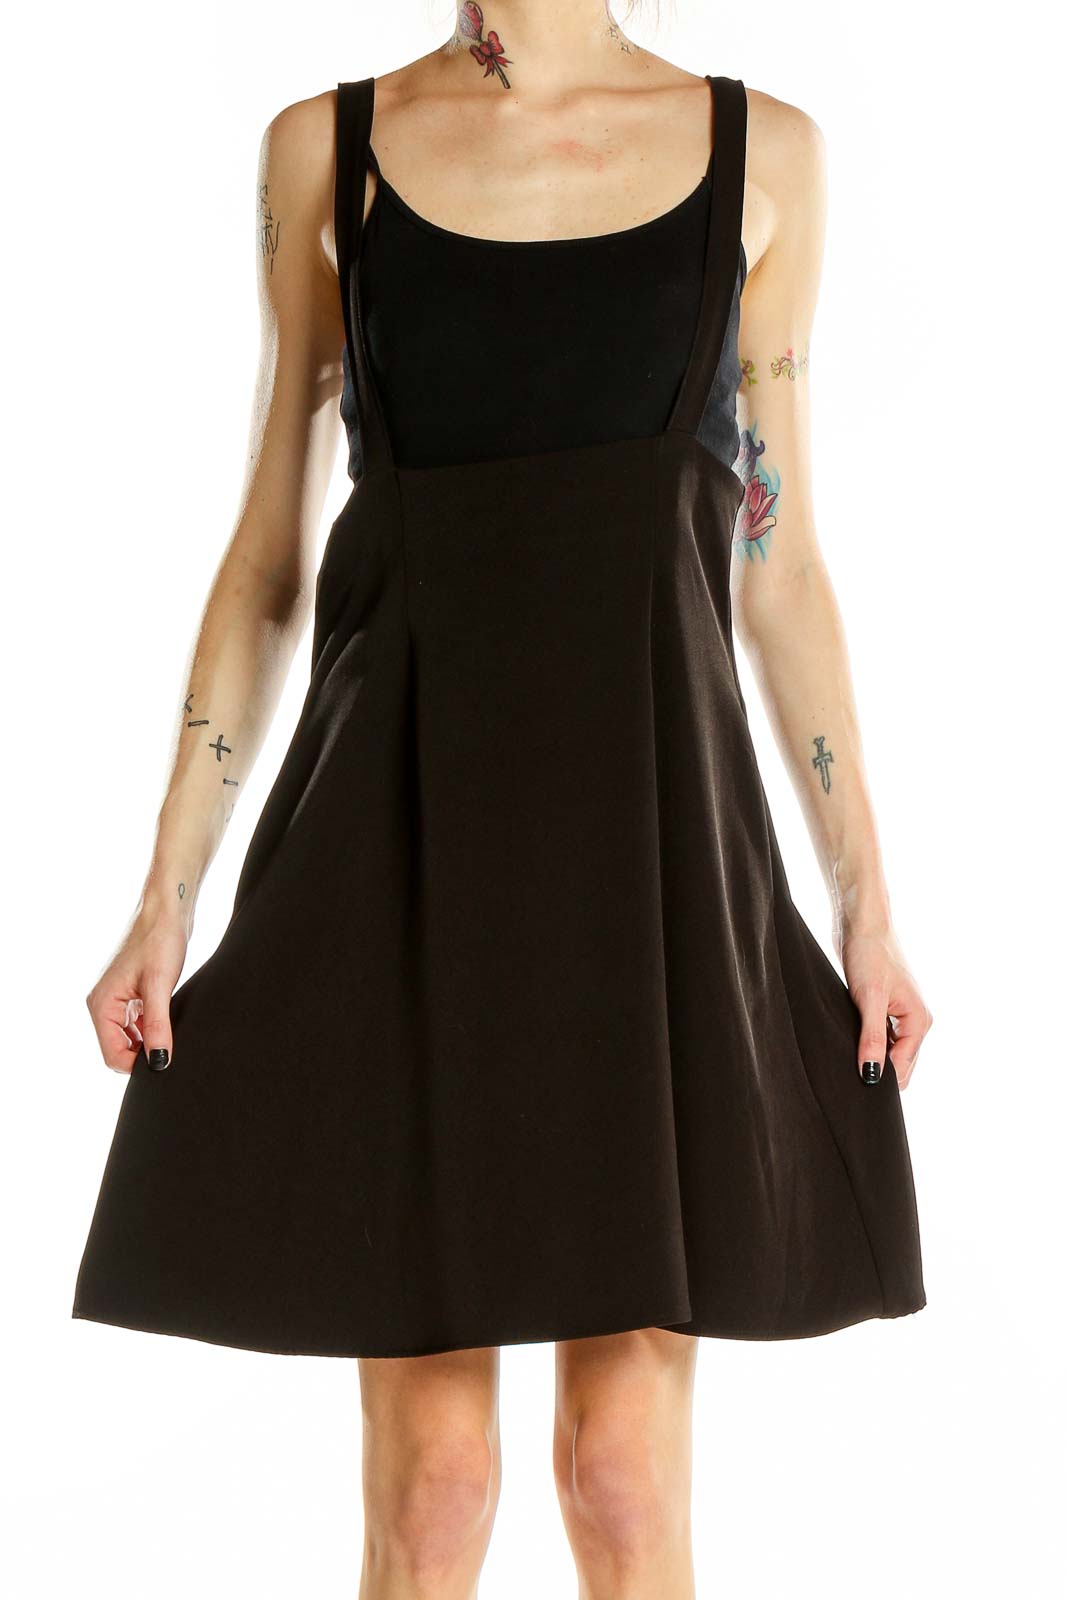 Black Skirt Overalls Front